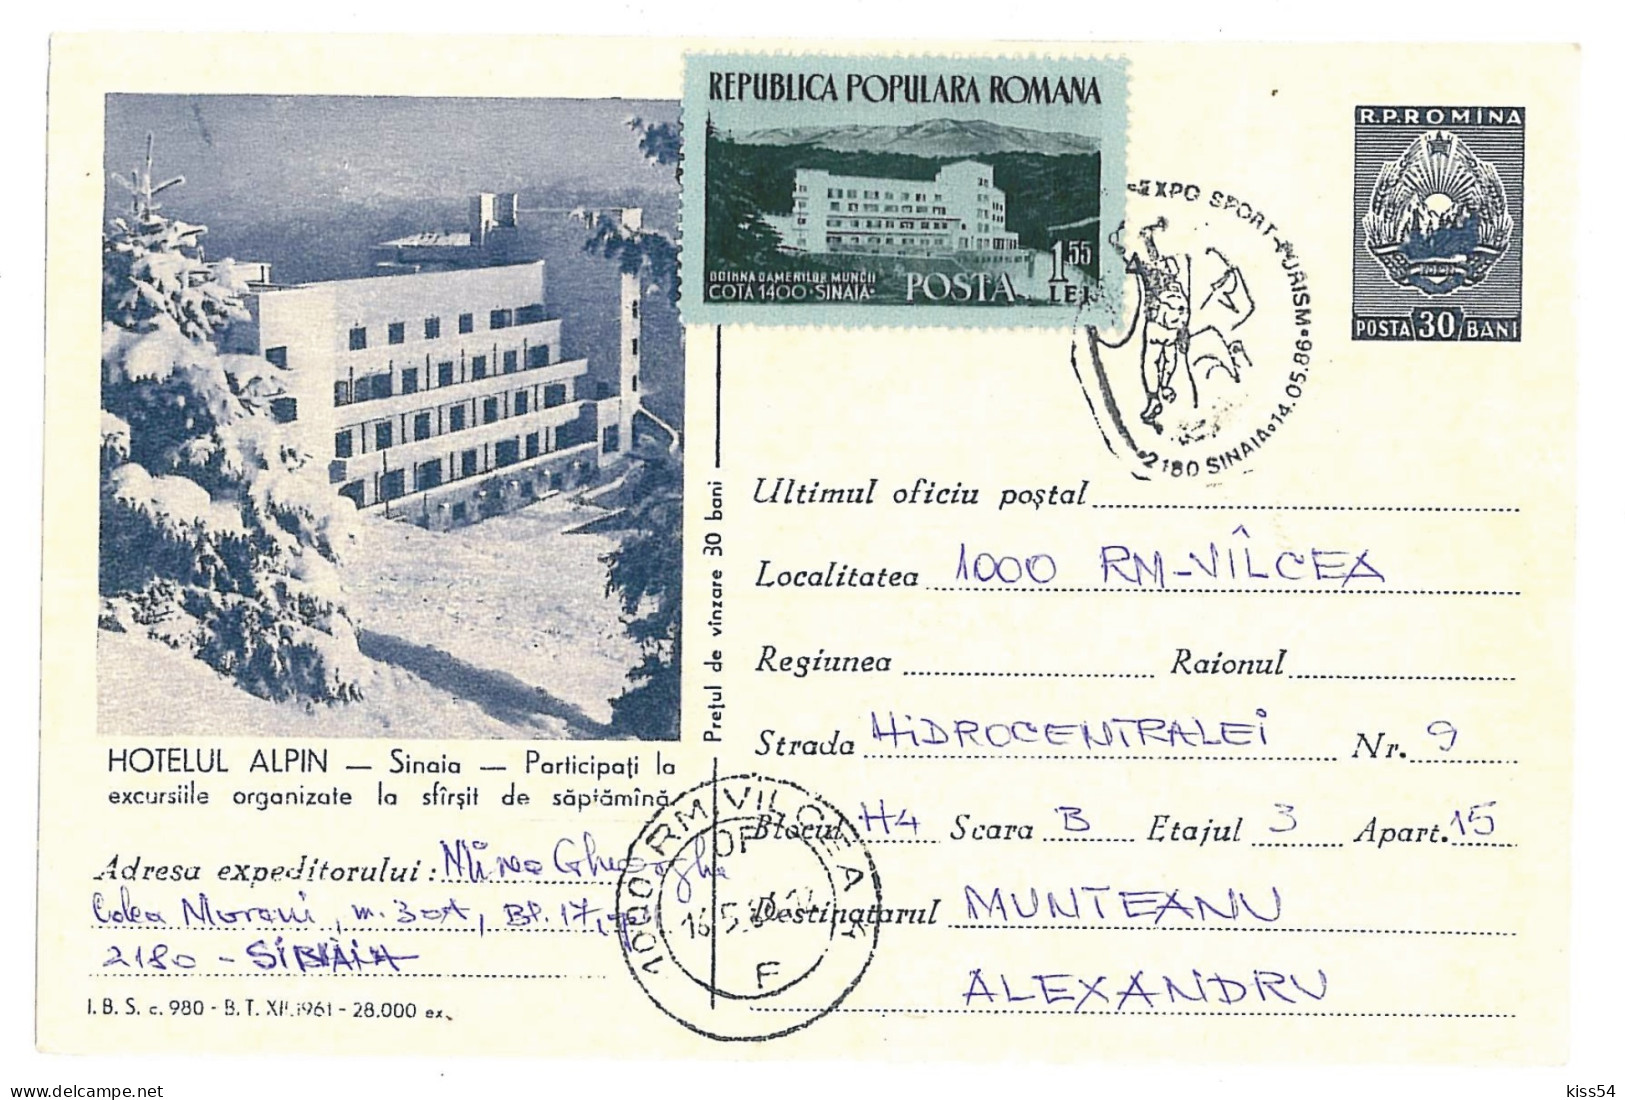 IP 61 - 0980d SINAIA, Hotel Alpin, Romania - Stationery - Used - 1961 - Postal Stationery